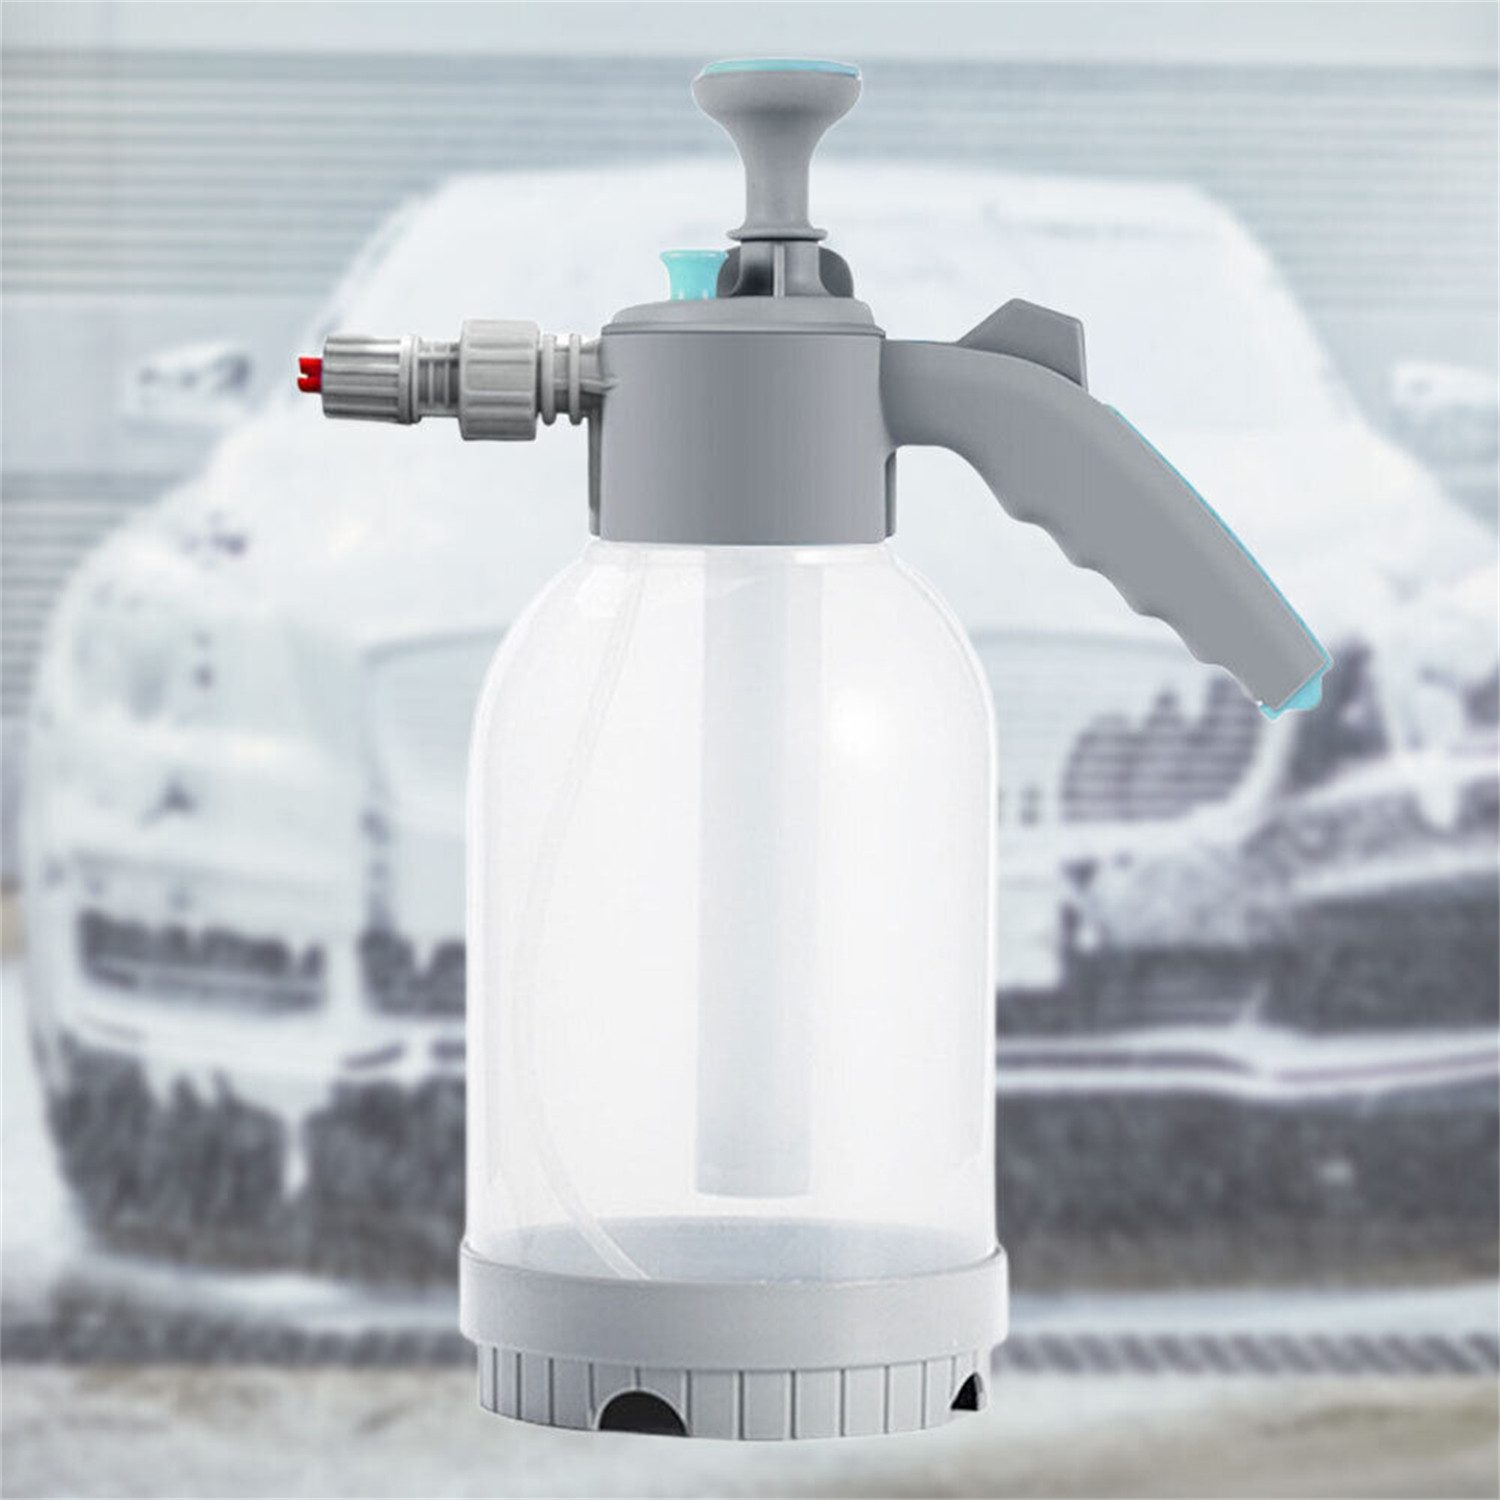 yozhiqu Gießkanne 2L Handheld Autowasch-Schaumsprüher, manueller Hochdrucksprüher, Wassersprühgerät zum Waschen und Reinigen von Autos